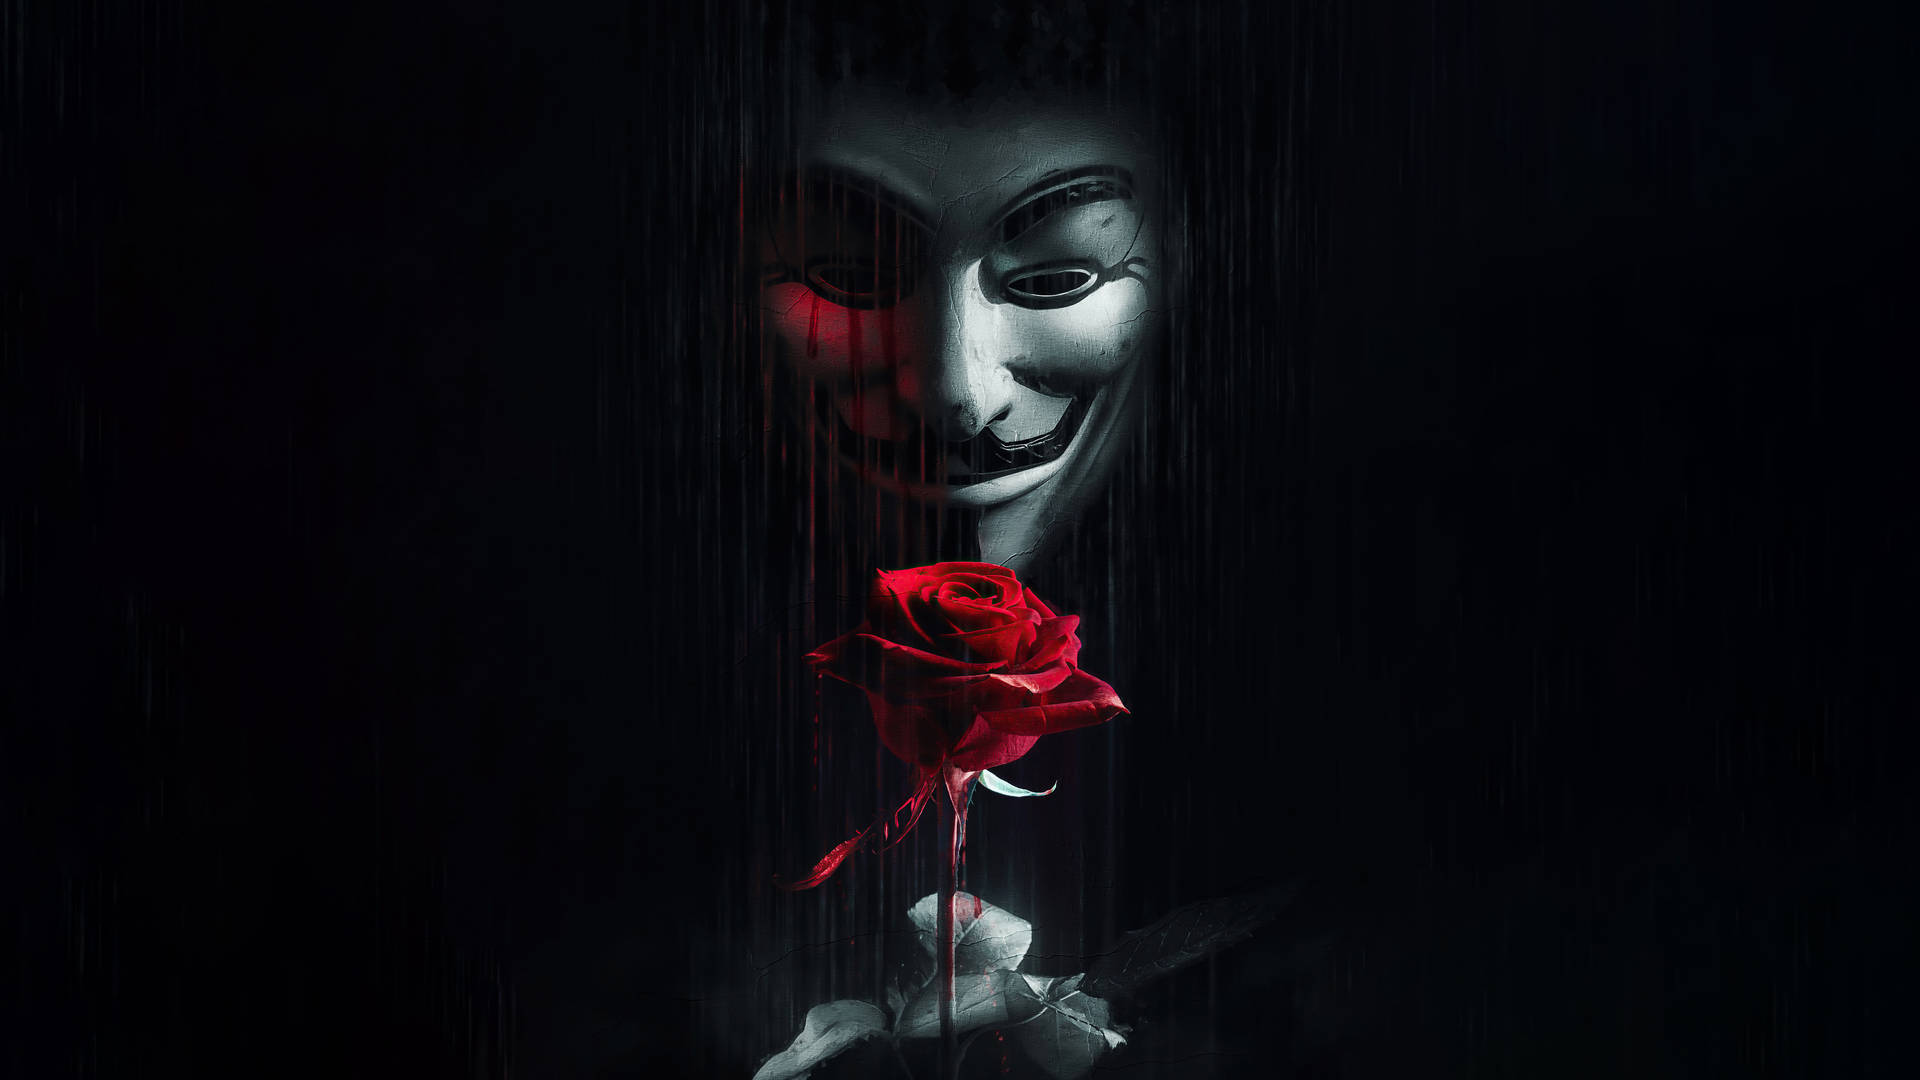 64kultra Hd Hacker Gruppe Anonymous Maske Wallpaper